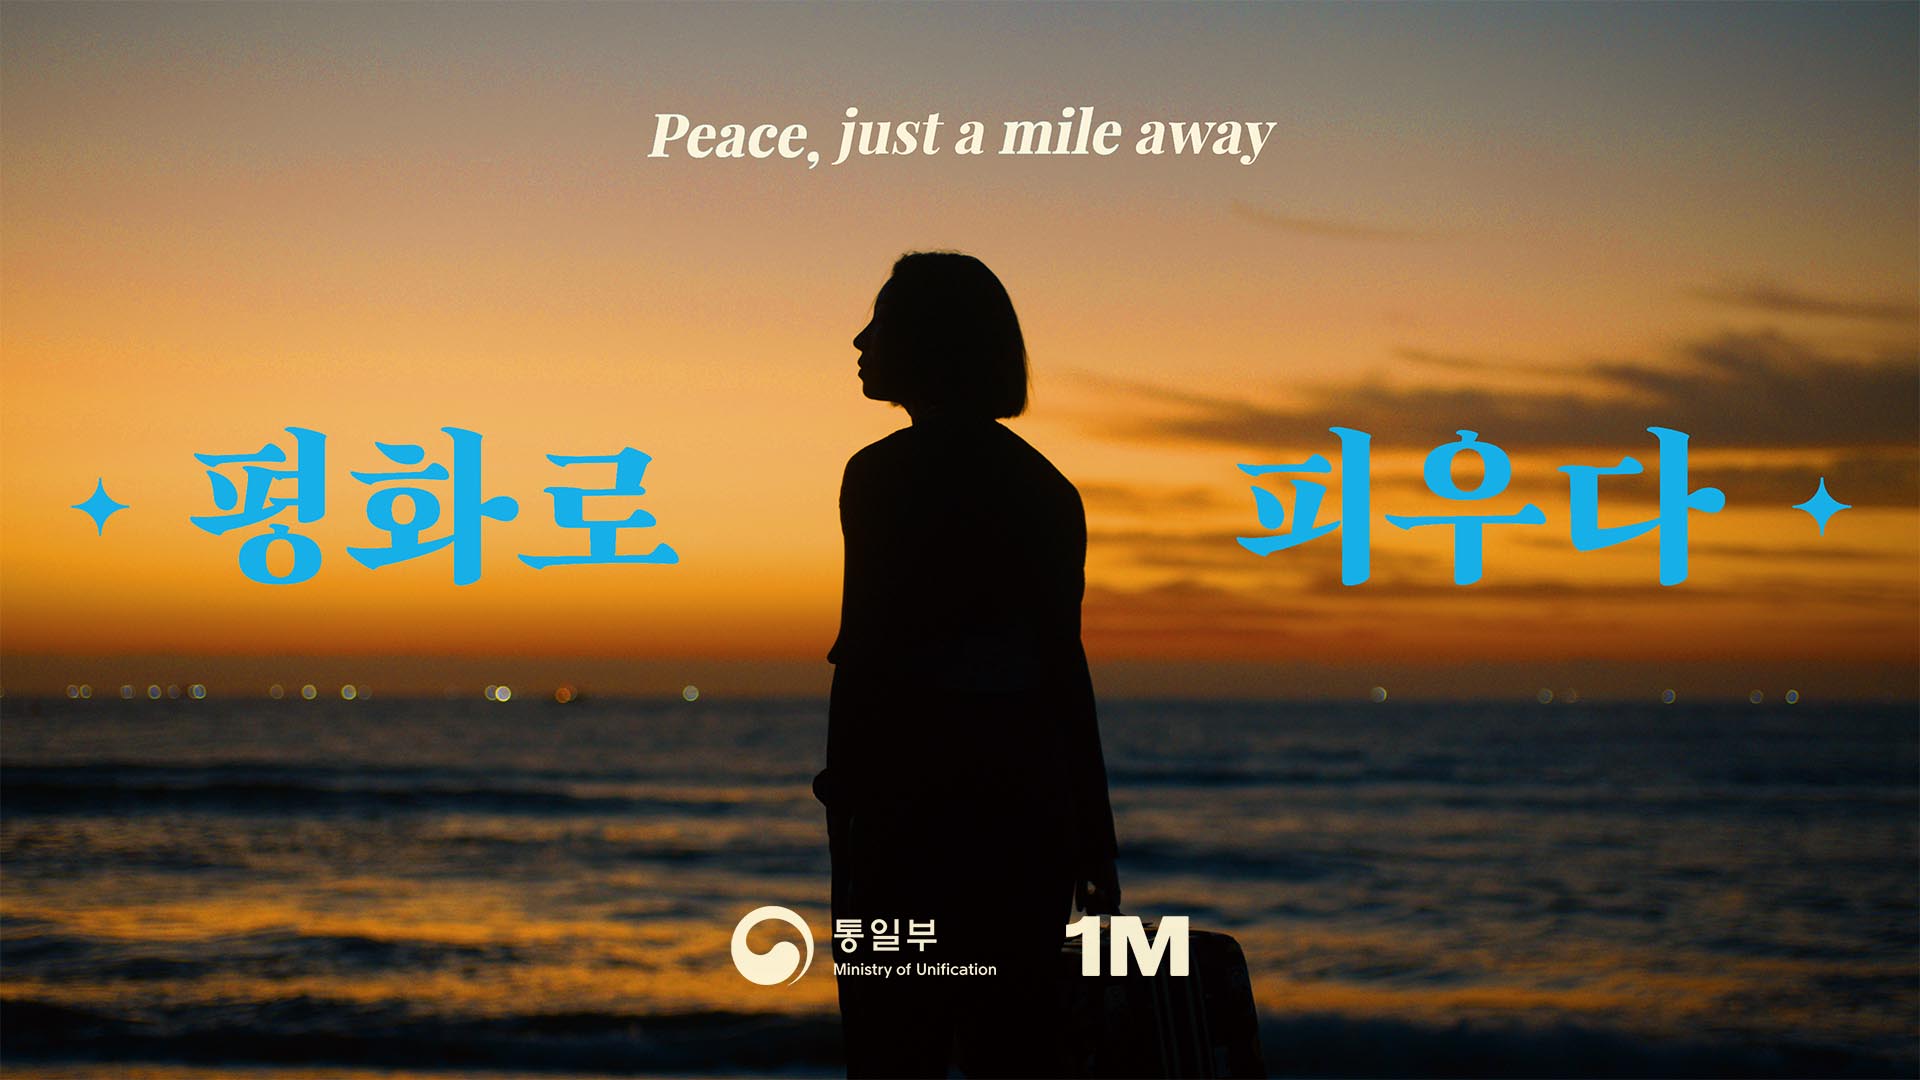 [통일부 X 1MILLION] ‘평화로 피우다’ #Peacemile #댄스챌린지 예고편